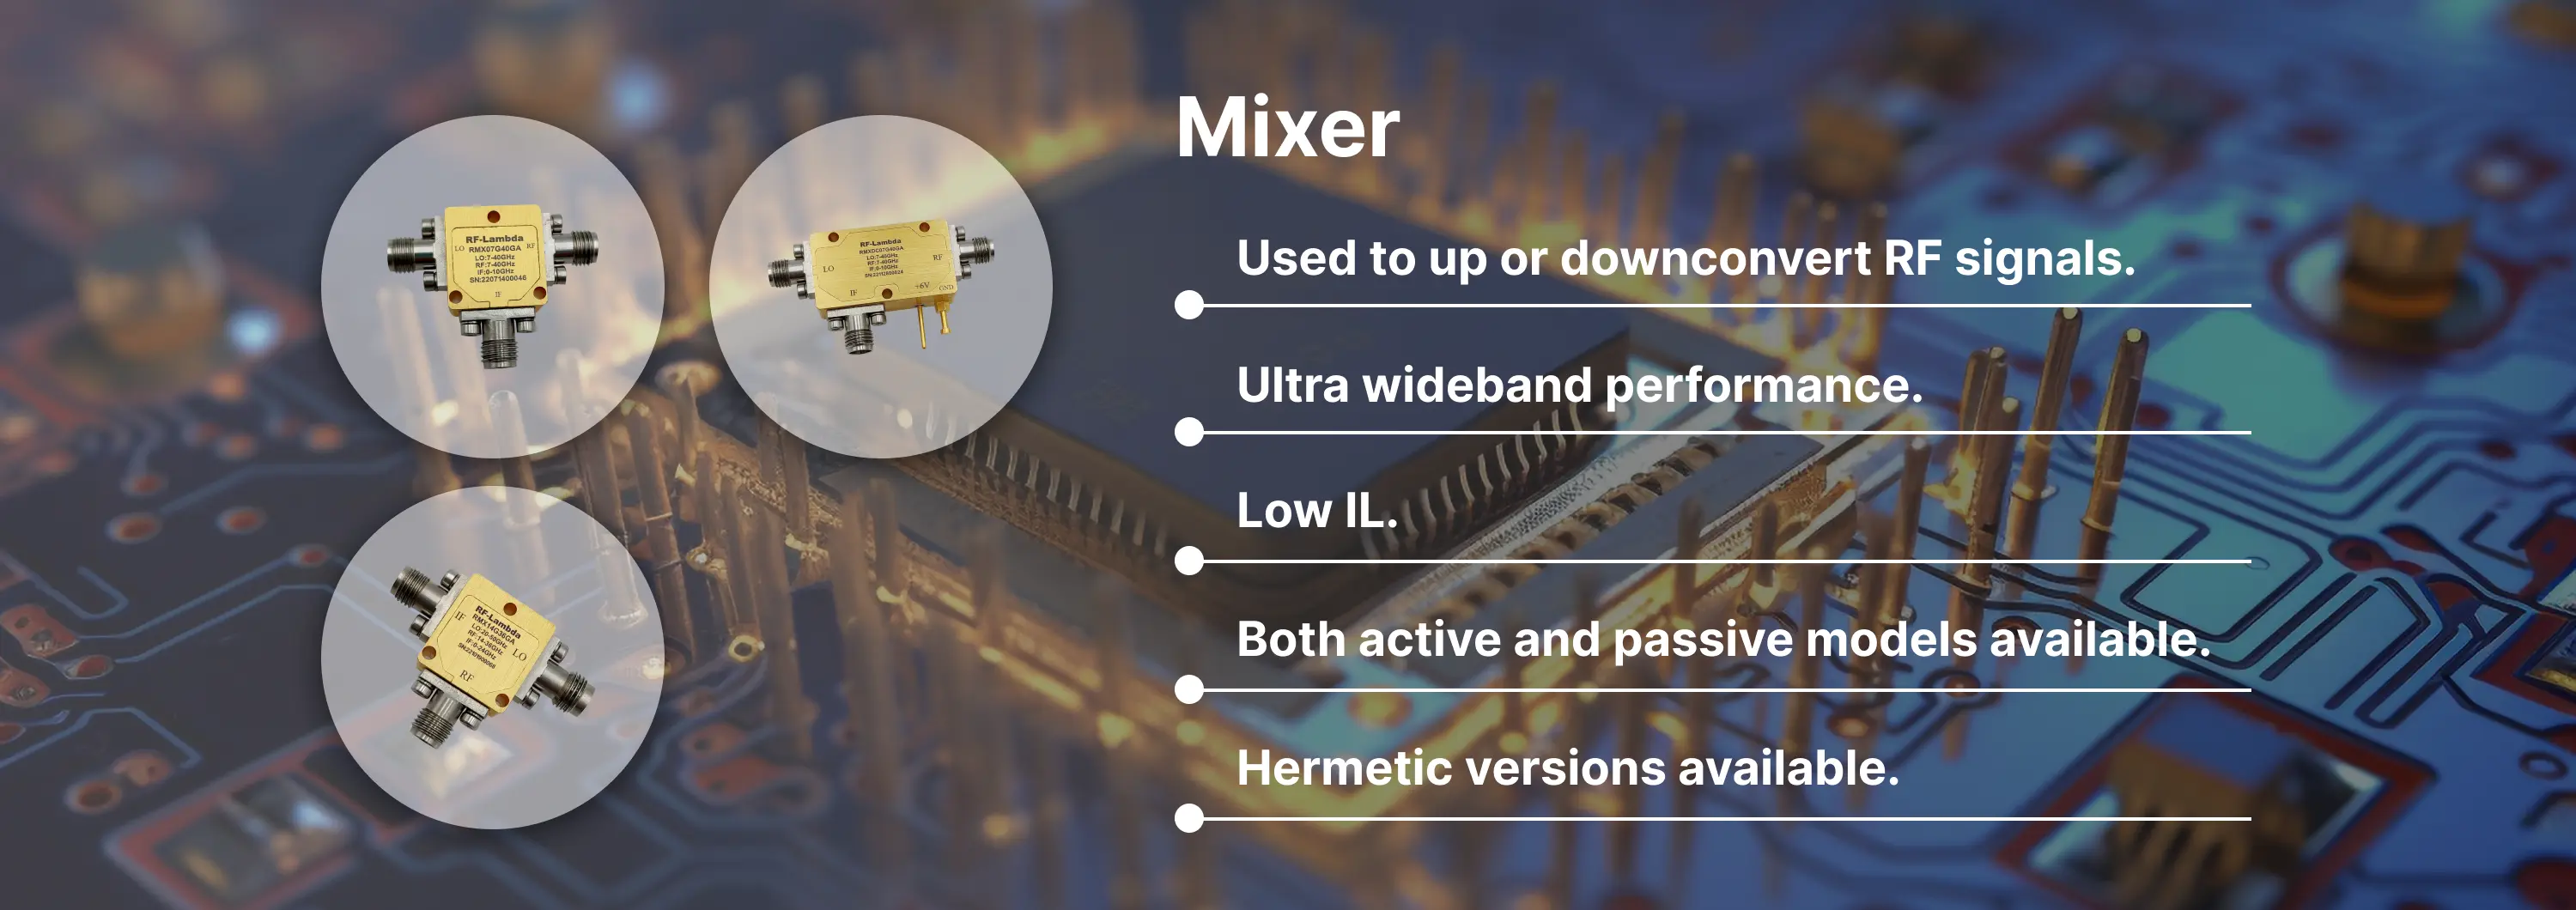 Mixer Banner